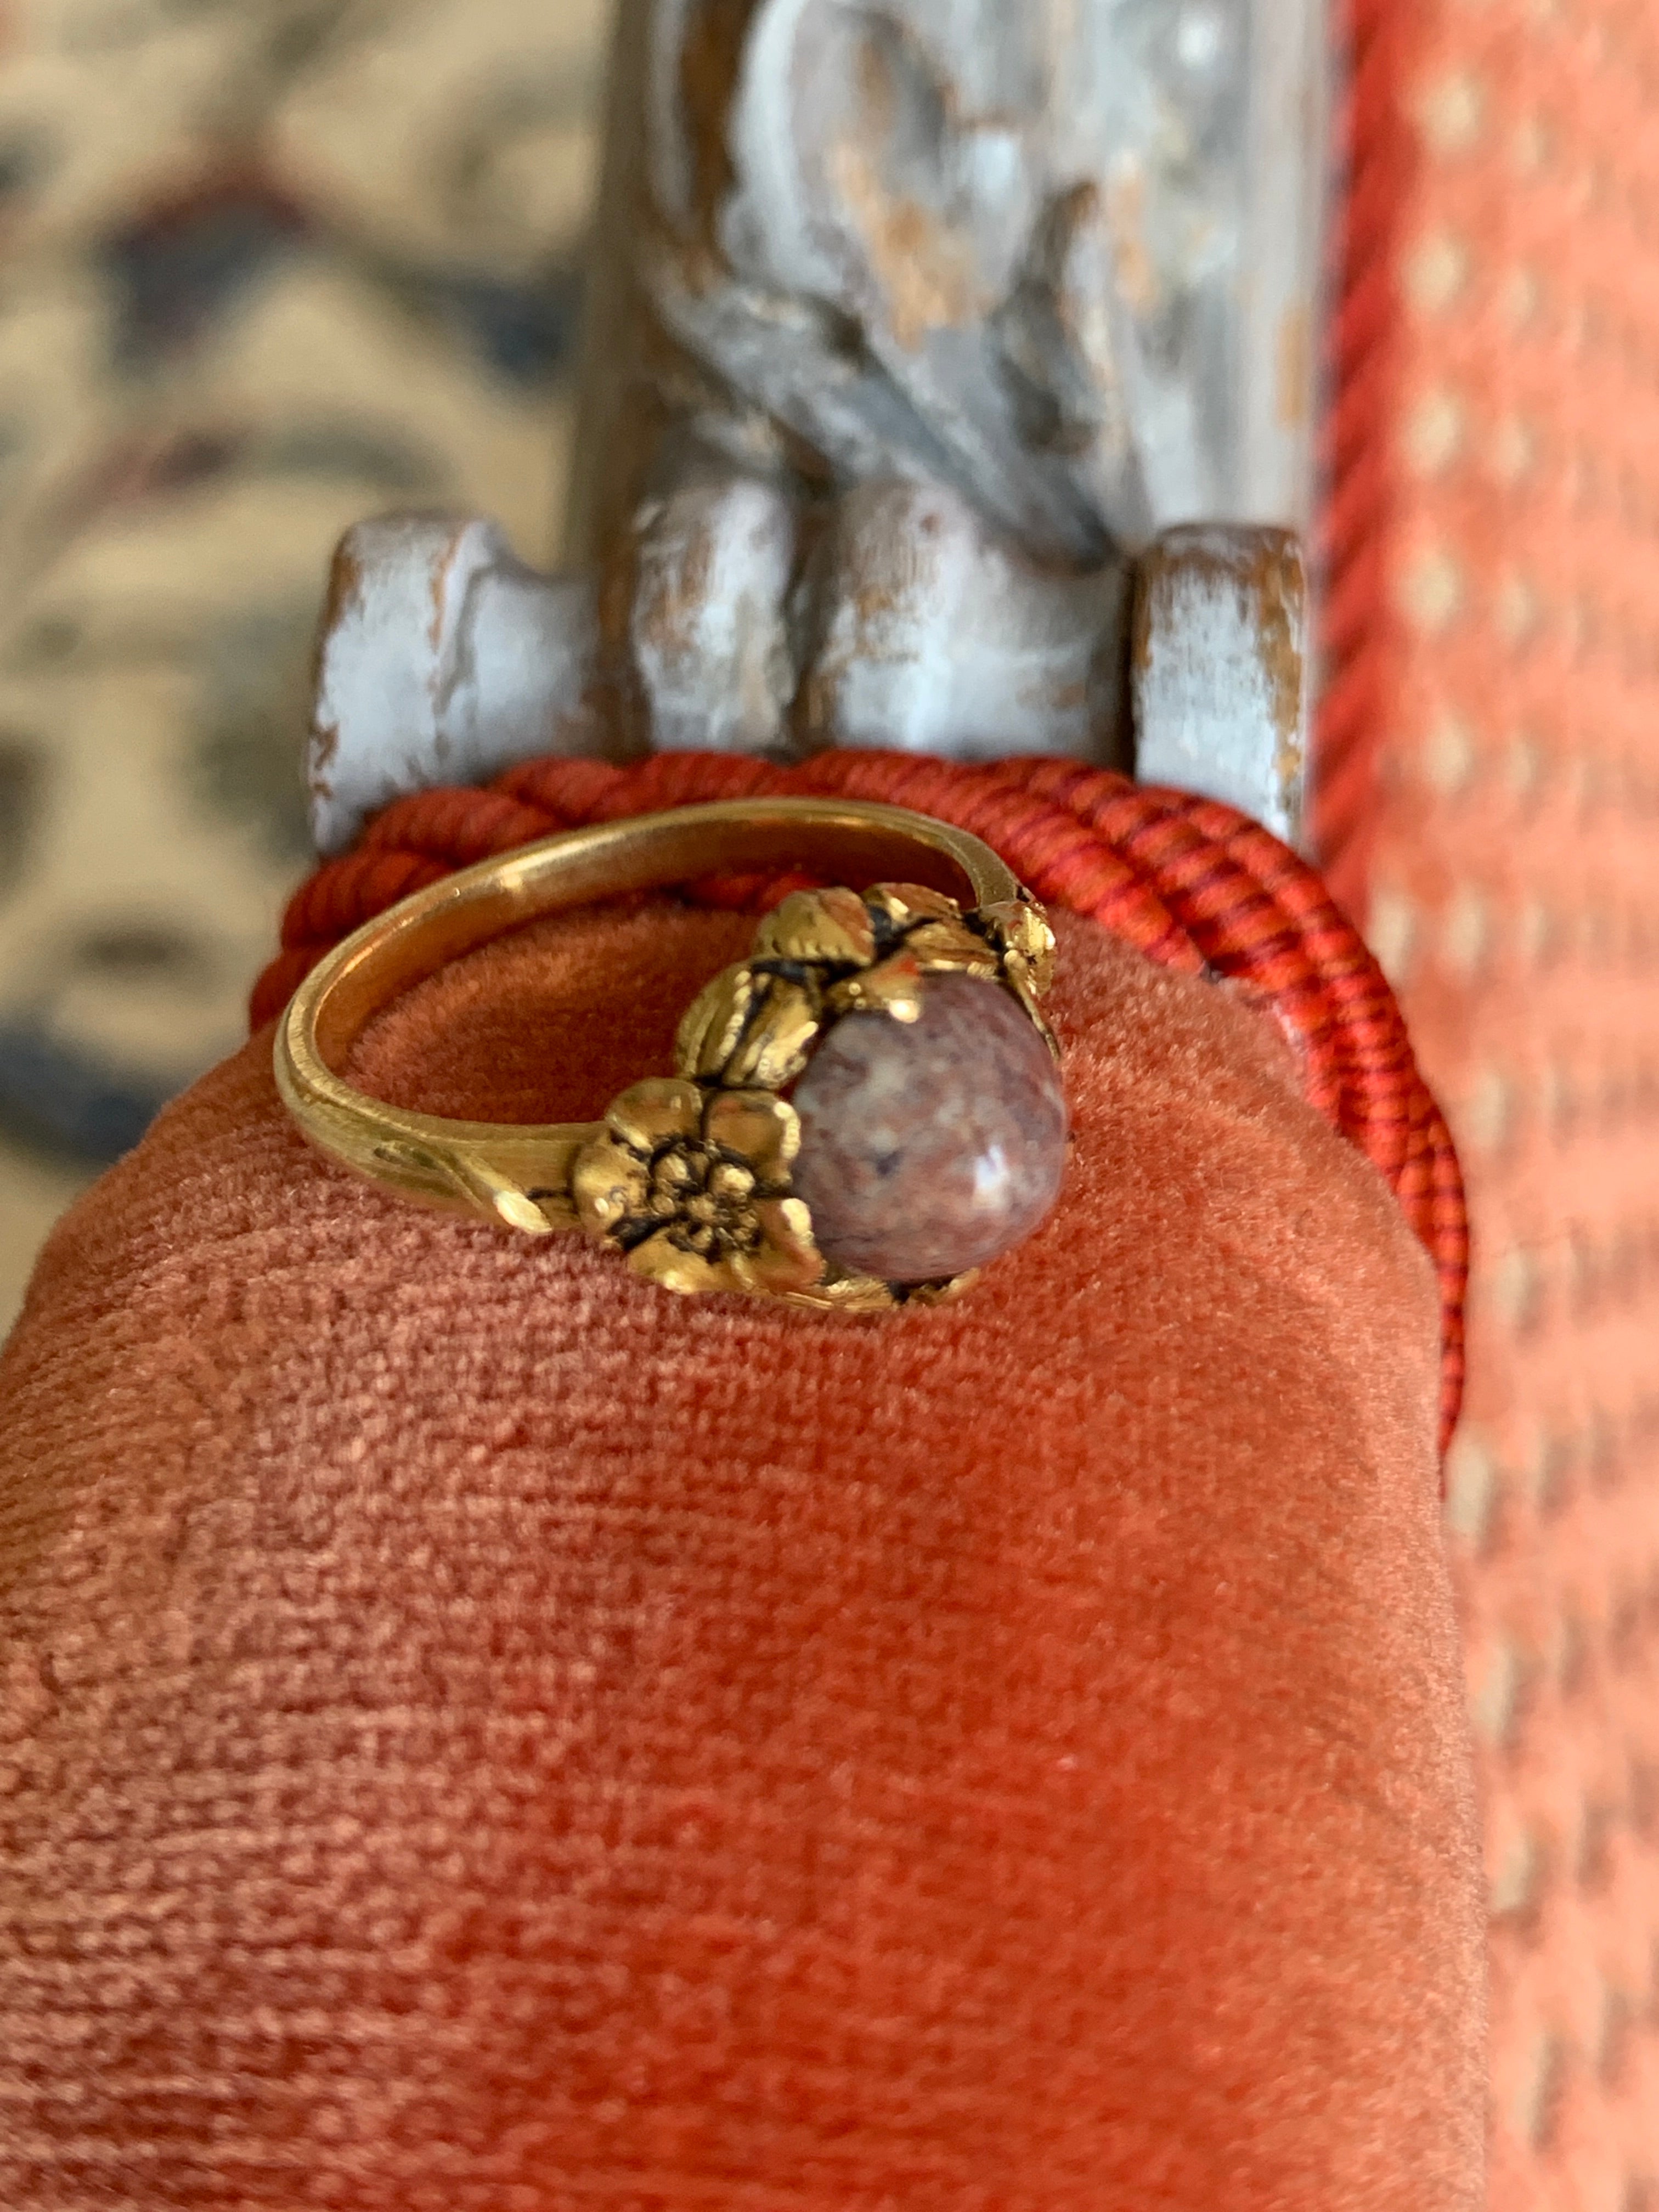 Französischer Ring aus Gelbgold, verziert mit Blumen und Blättern, die einen violetten Achat im organischen Jugendstil-Look umschließen. Schönes Schmuckstück in sehr gutem Zustand.
Größe 53
4,3 gr.